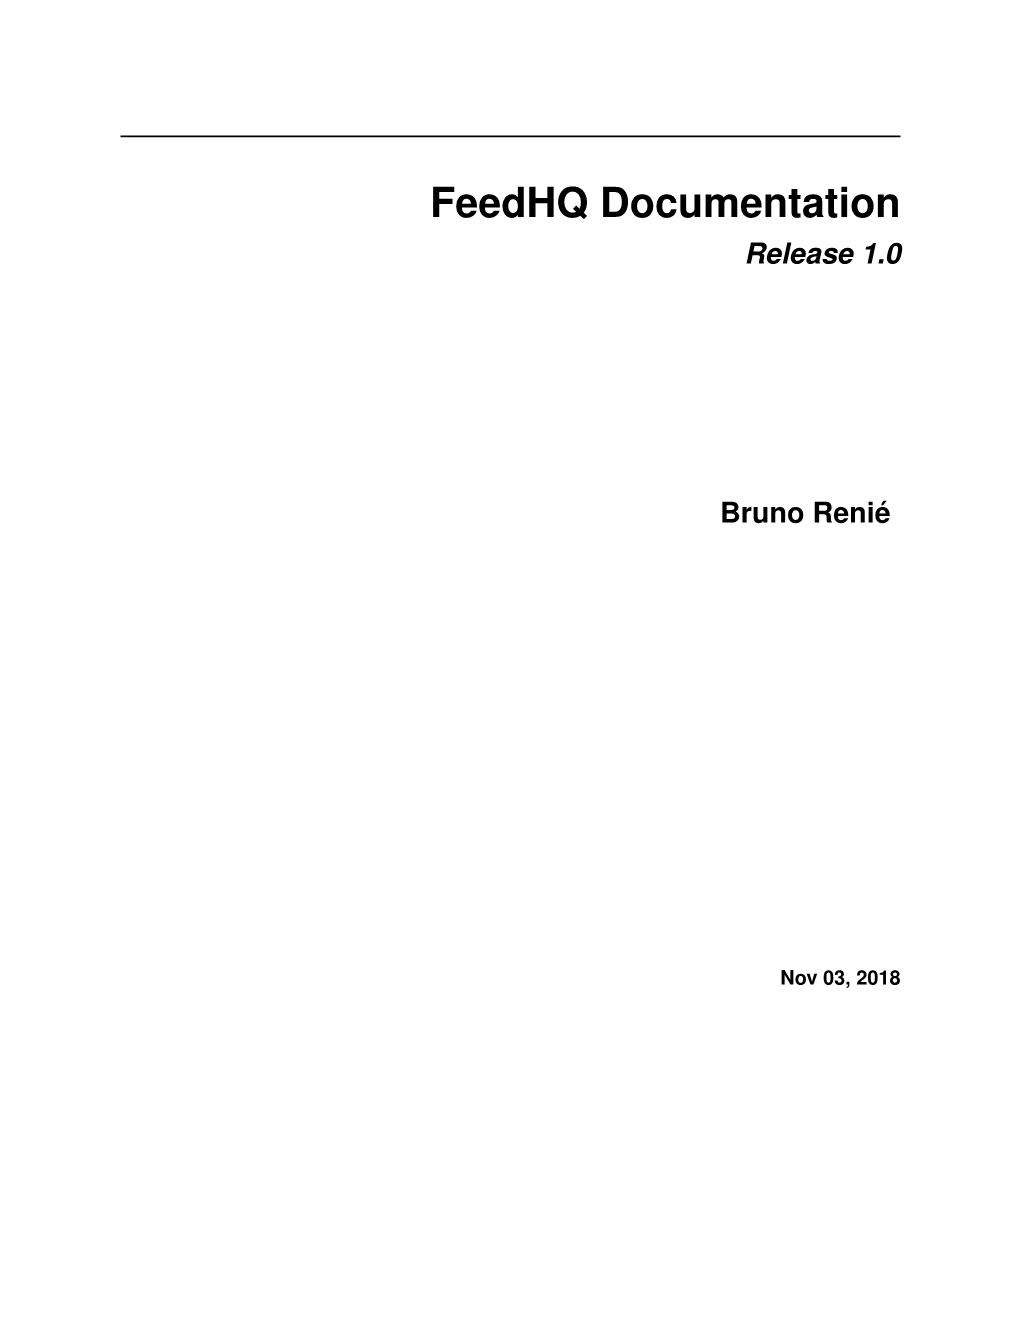 Feedhq Documentation Release 1.0